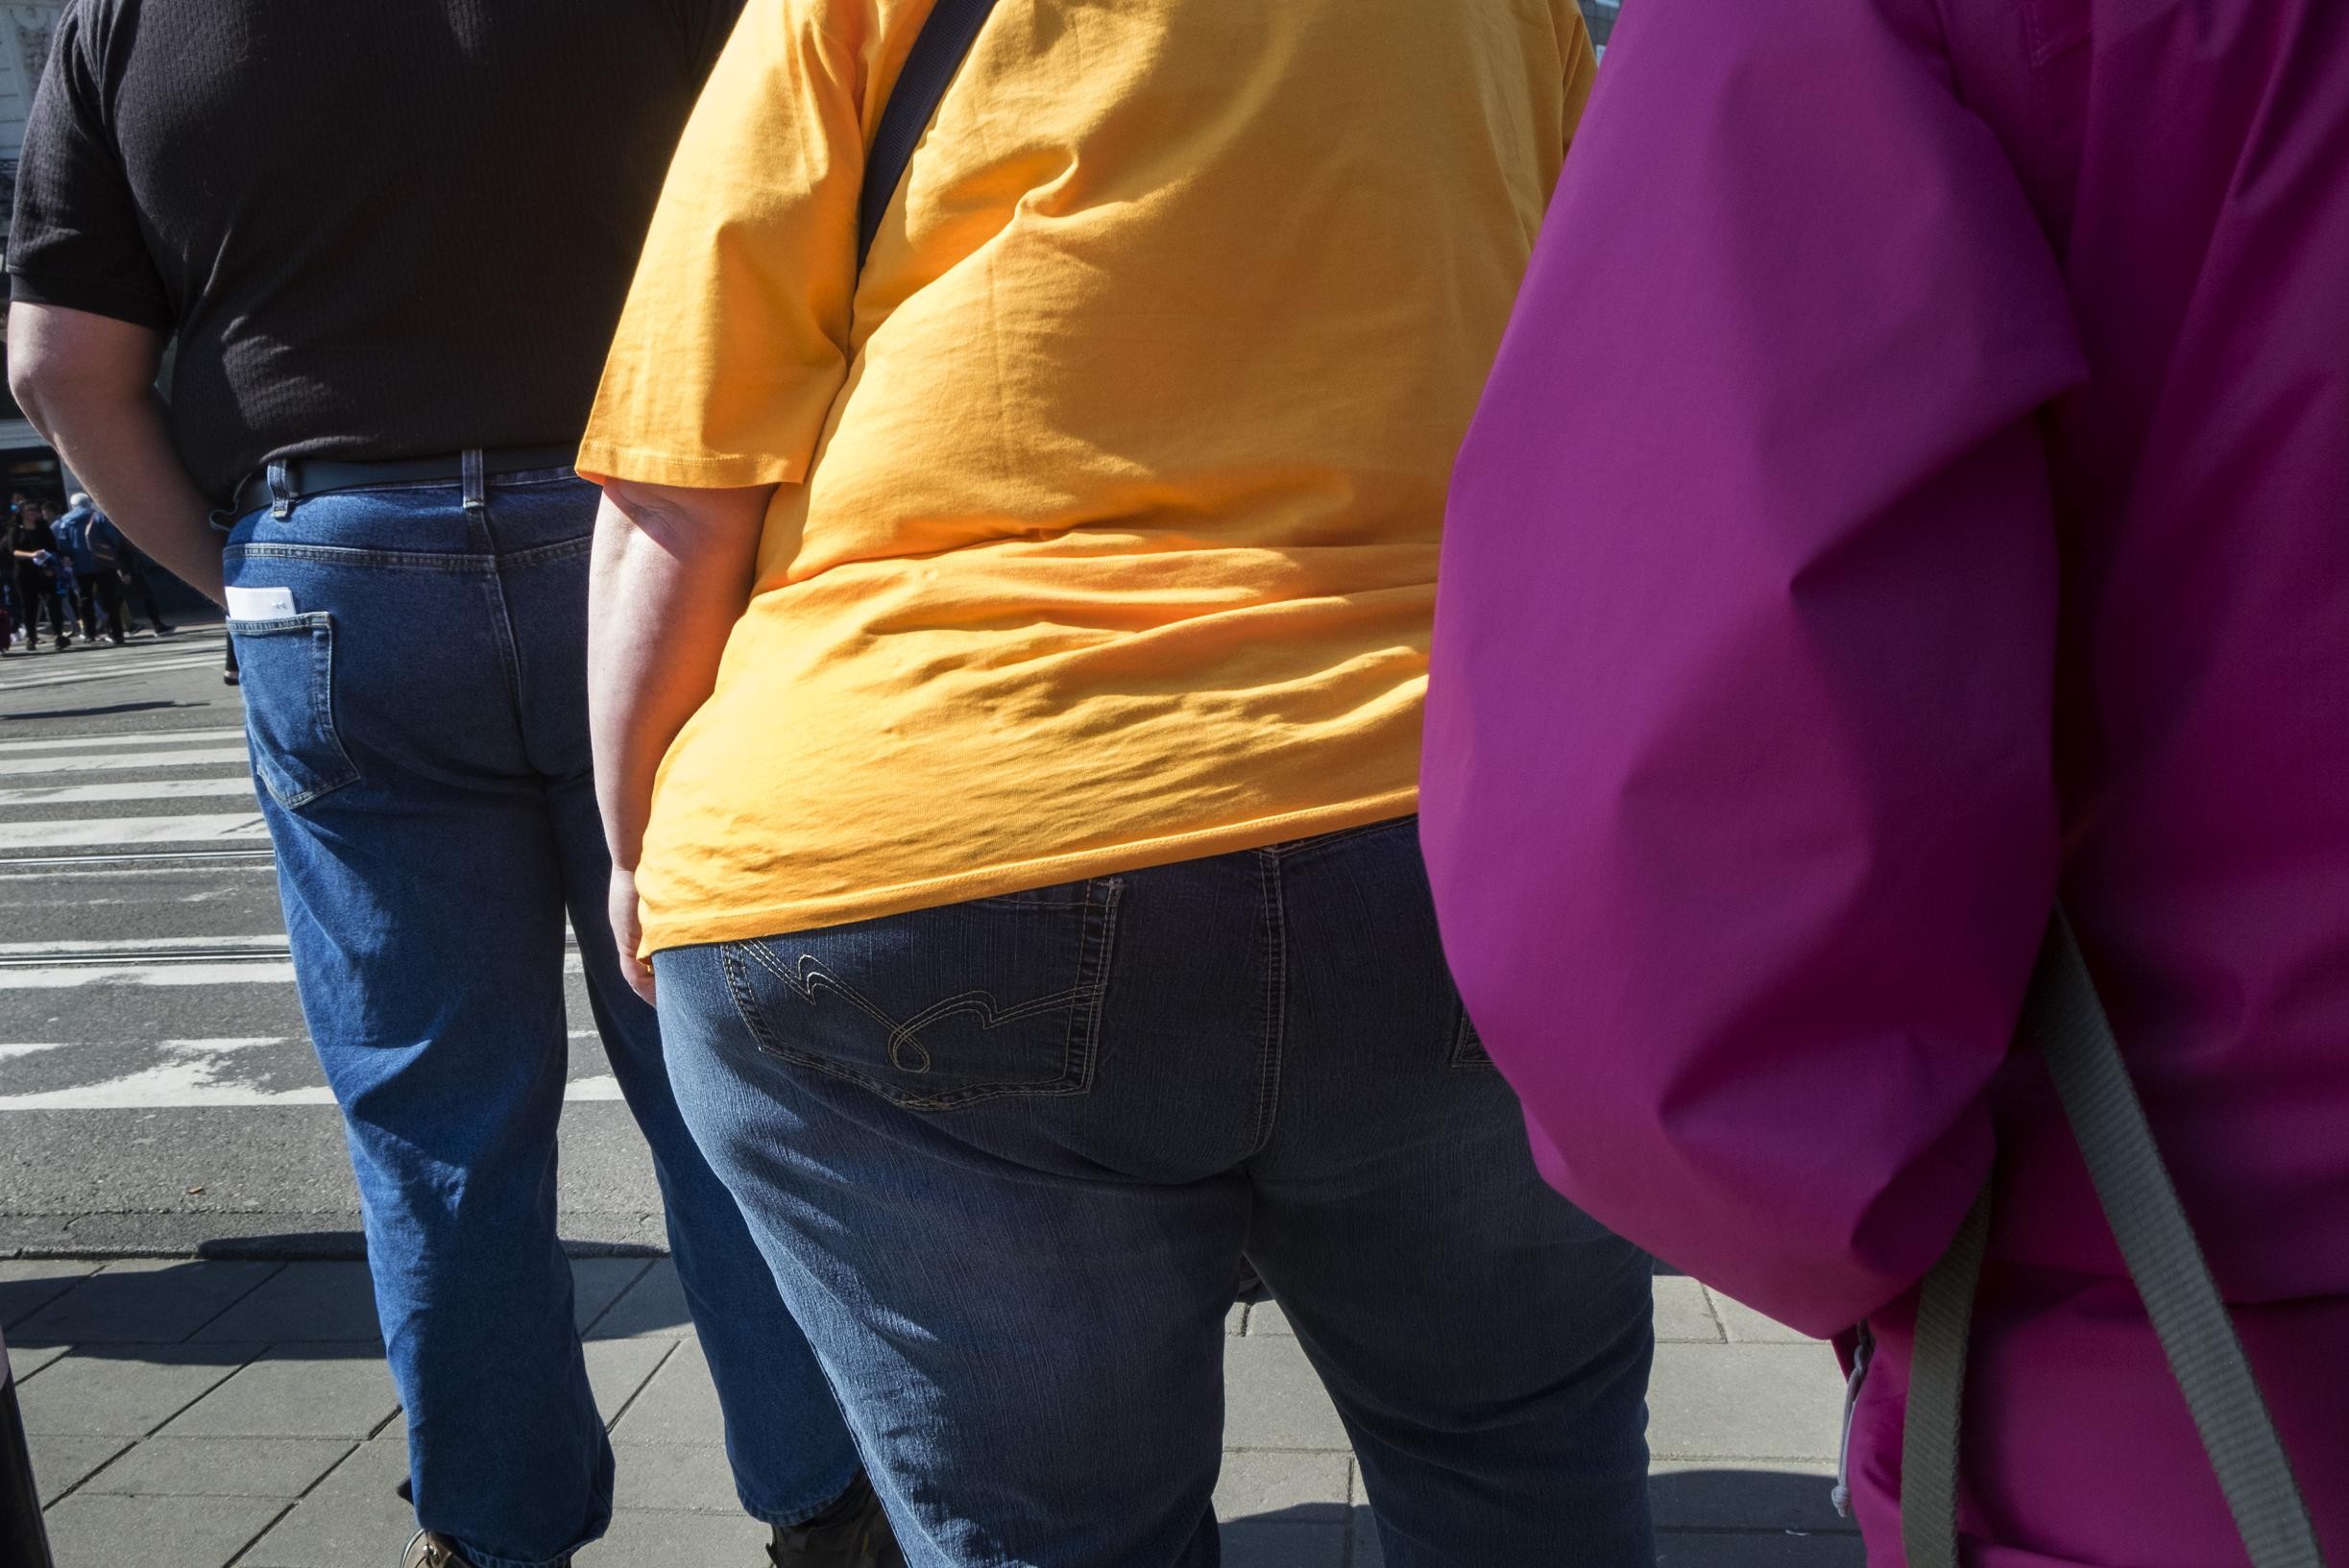 Organizzazione Mondiale della Sanità: “Quasi sei adulti su dieci sono in sovrappeso o obesi”.